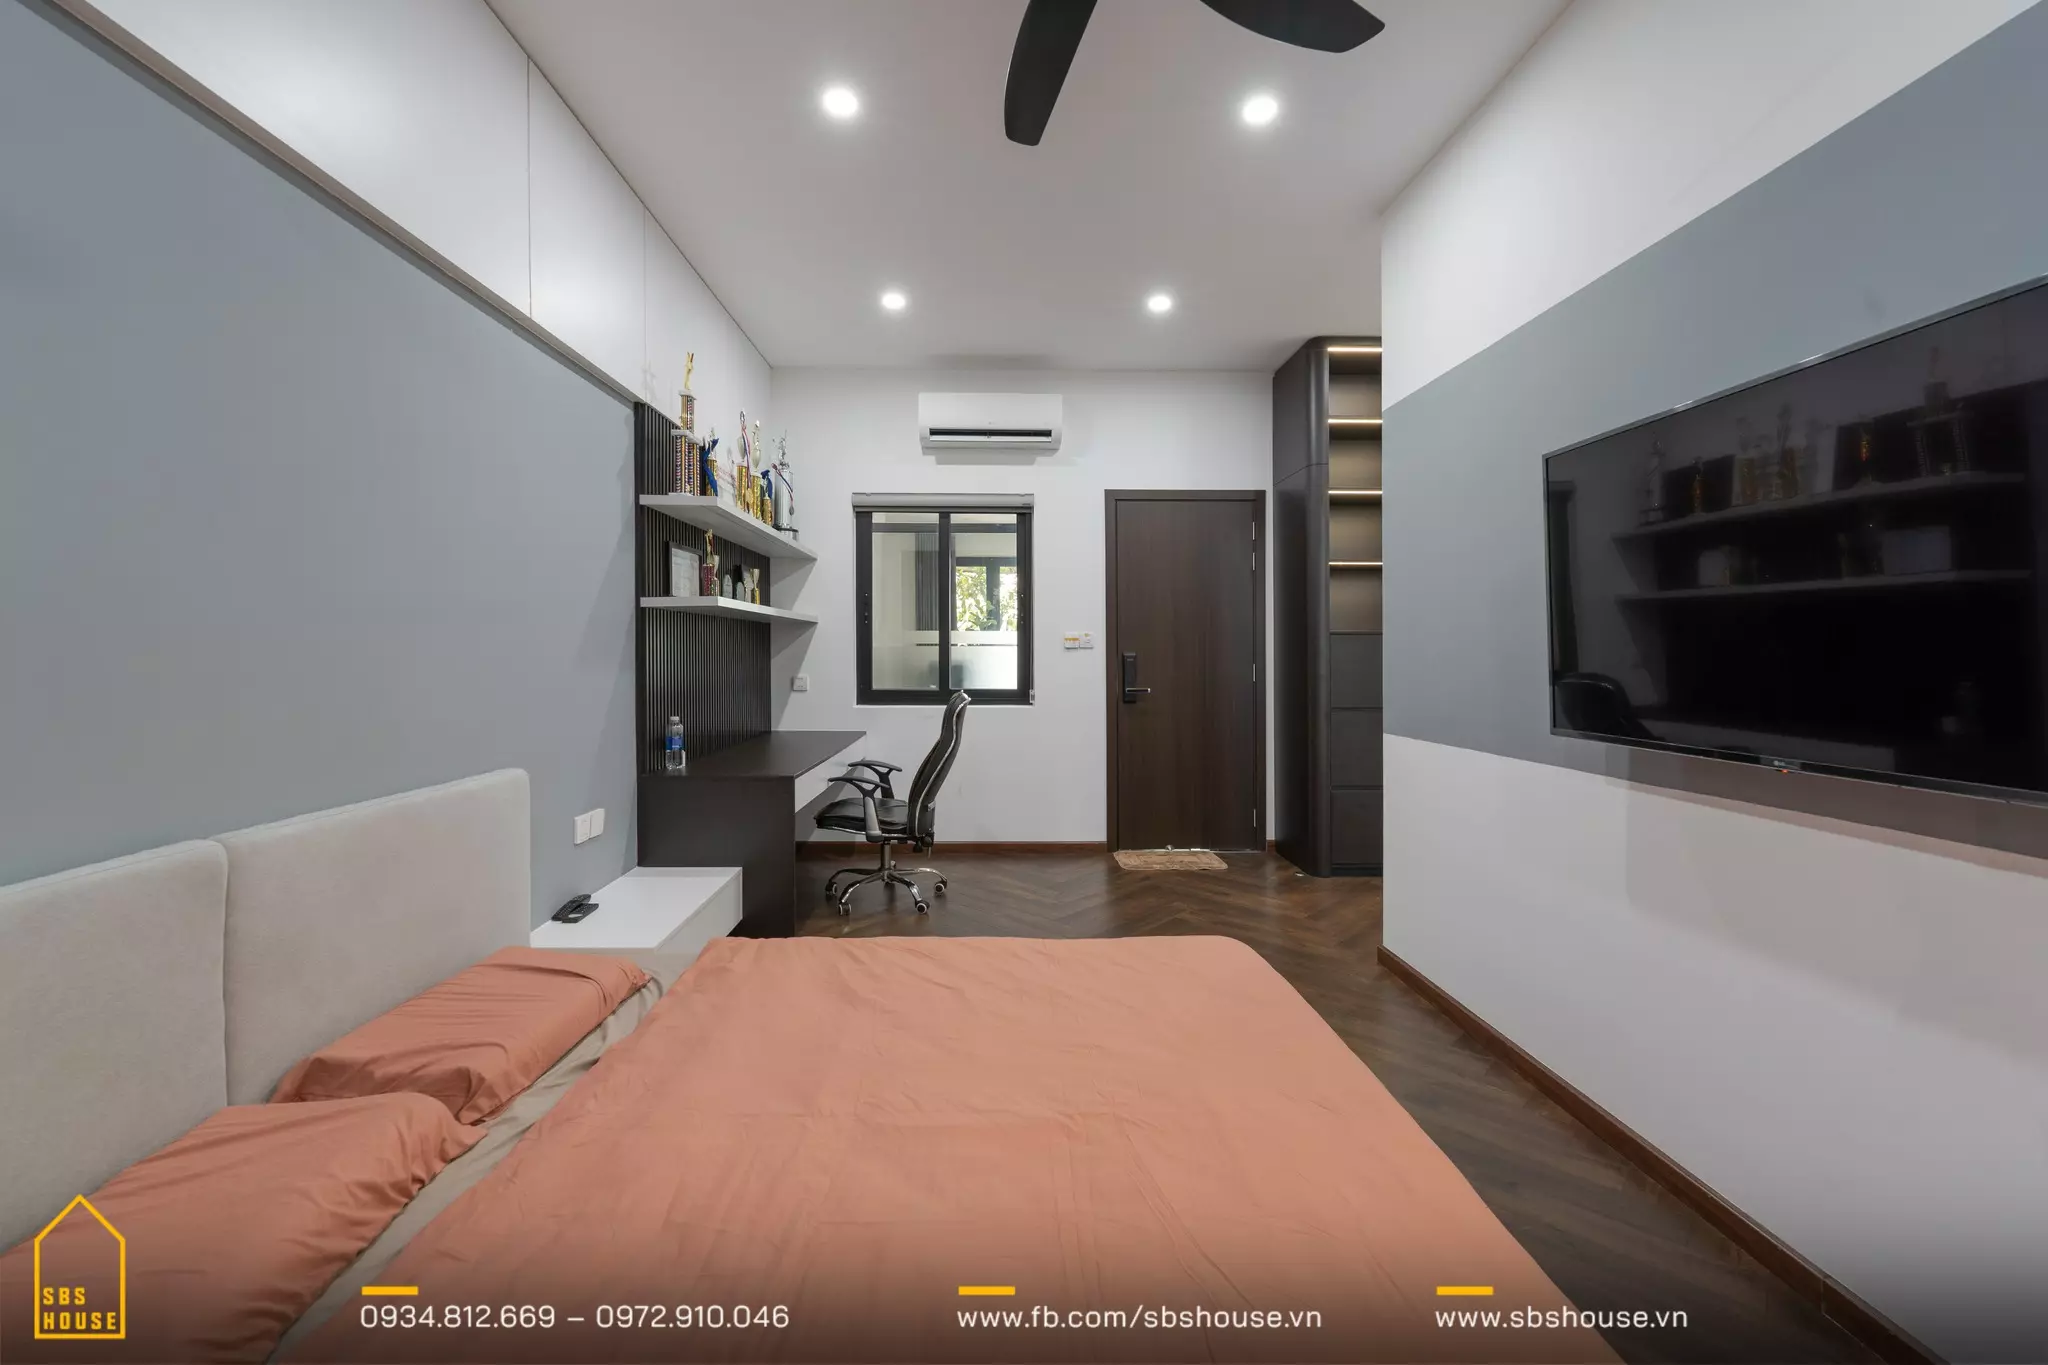 Phòng ngủ với thiết kế nội thất đơn giản và hiện đại. Trung tâm của căn phòng là một chiếc giường đôi với chăn ga màu cam nhạt, đầu giường màu be. 